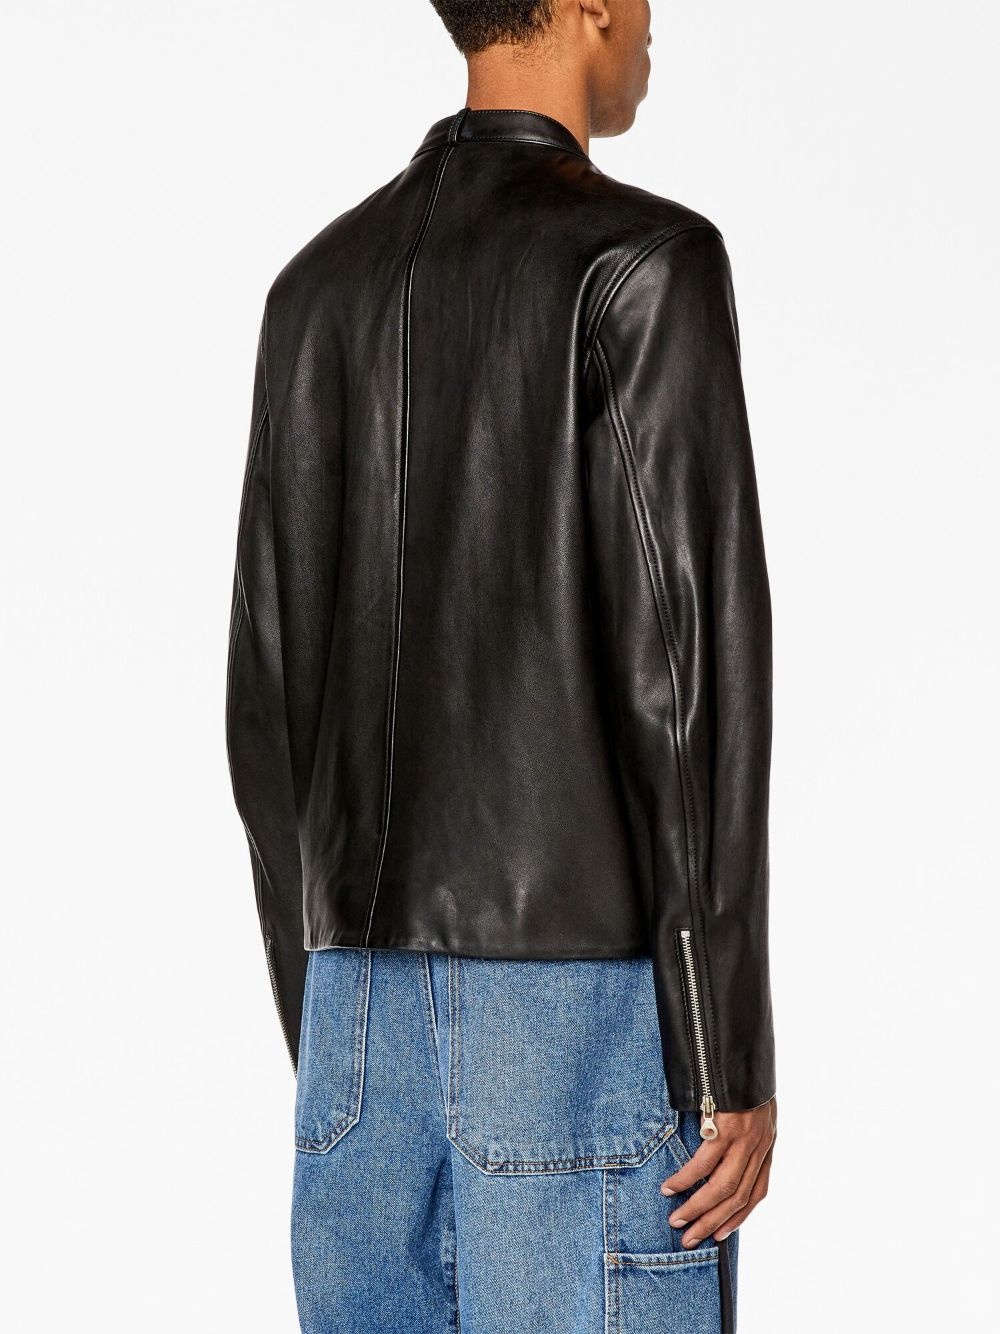 long-sleeved leather biker jacket - 4